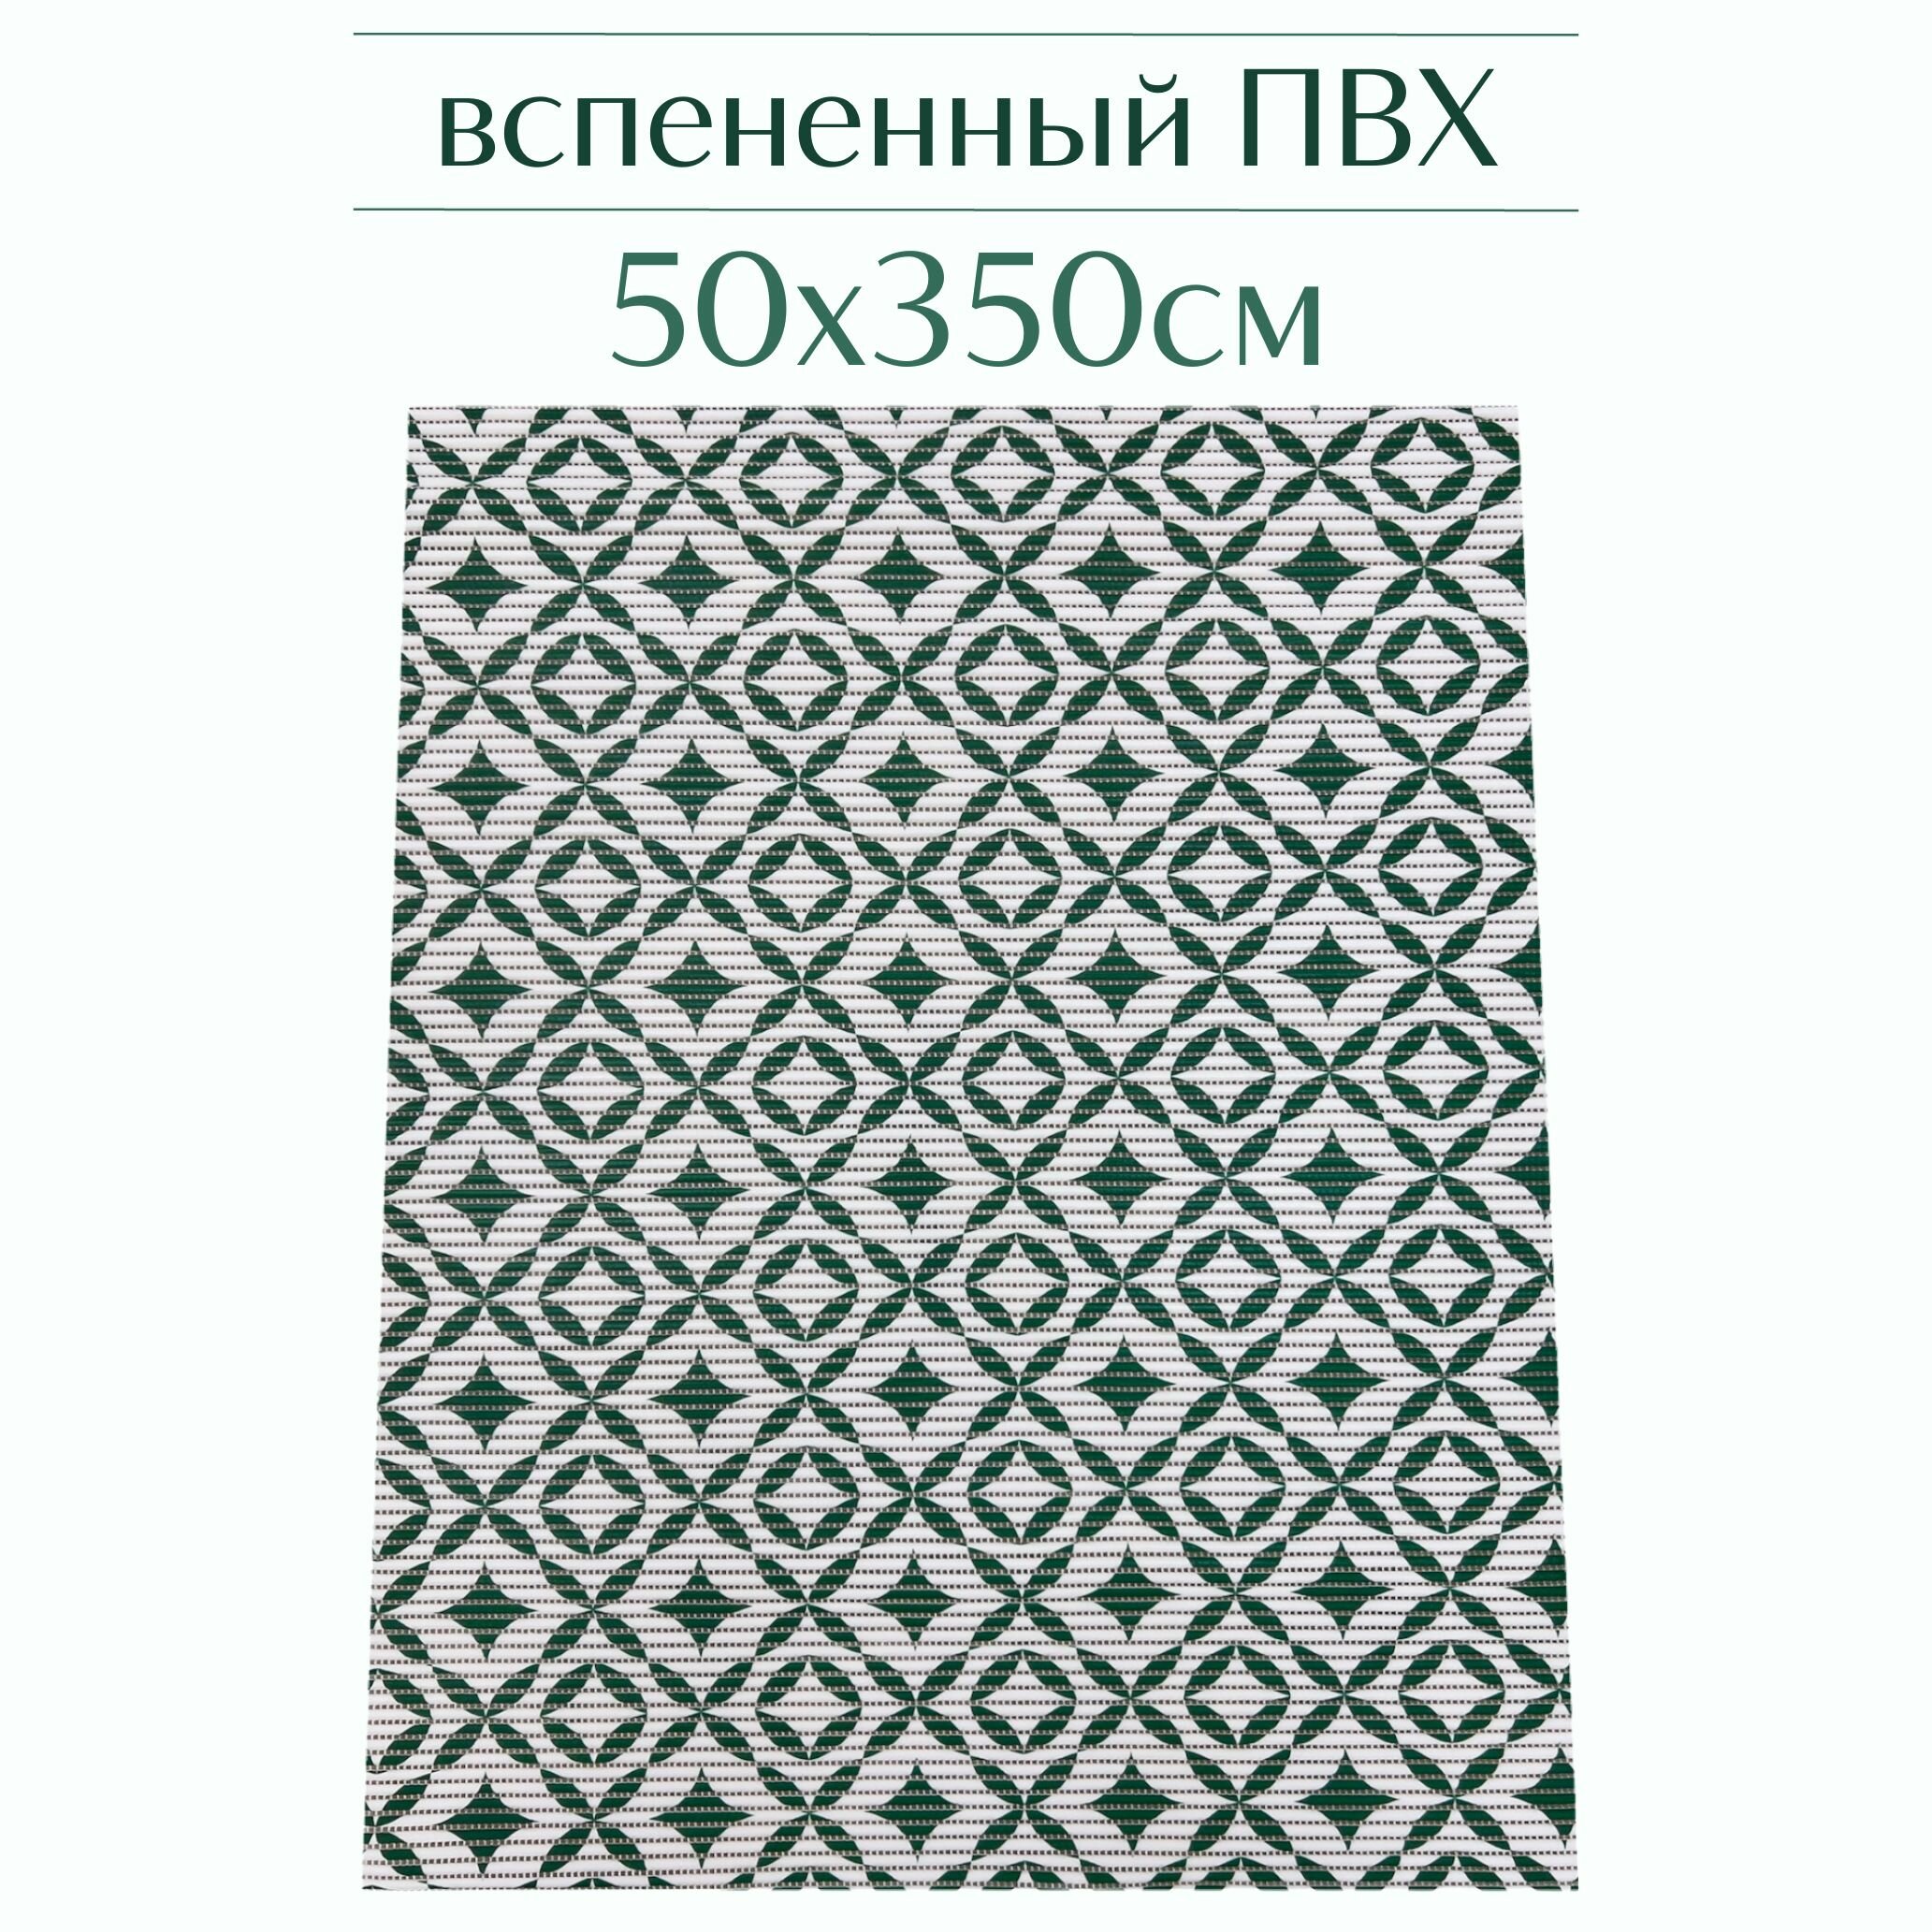 Напольный коврик для ванной из вспененного ПВХ 50x350 см, зеленый/белый, с рисунком